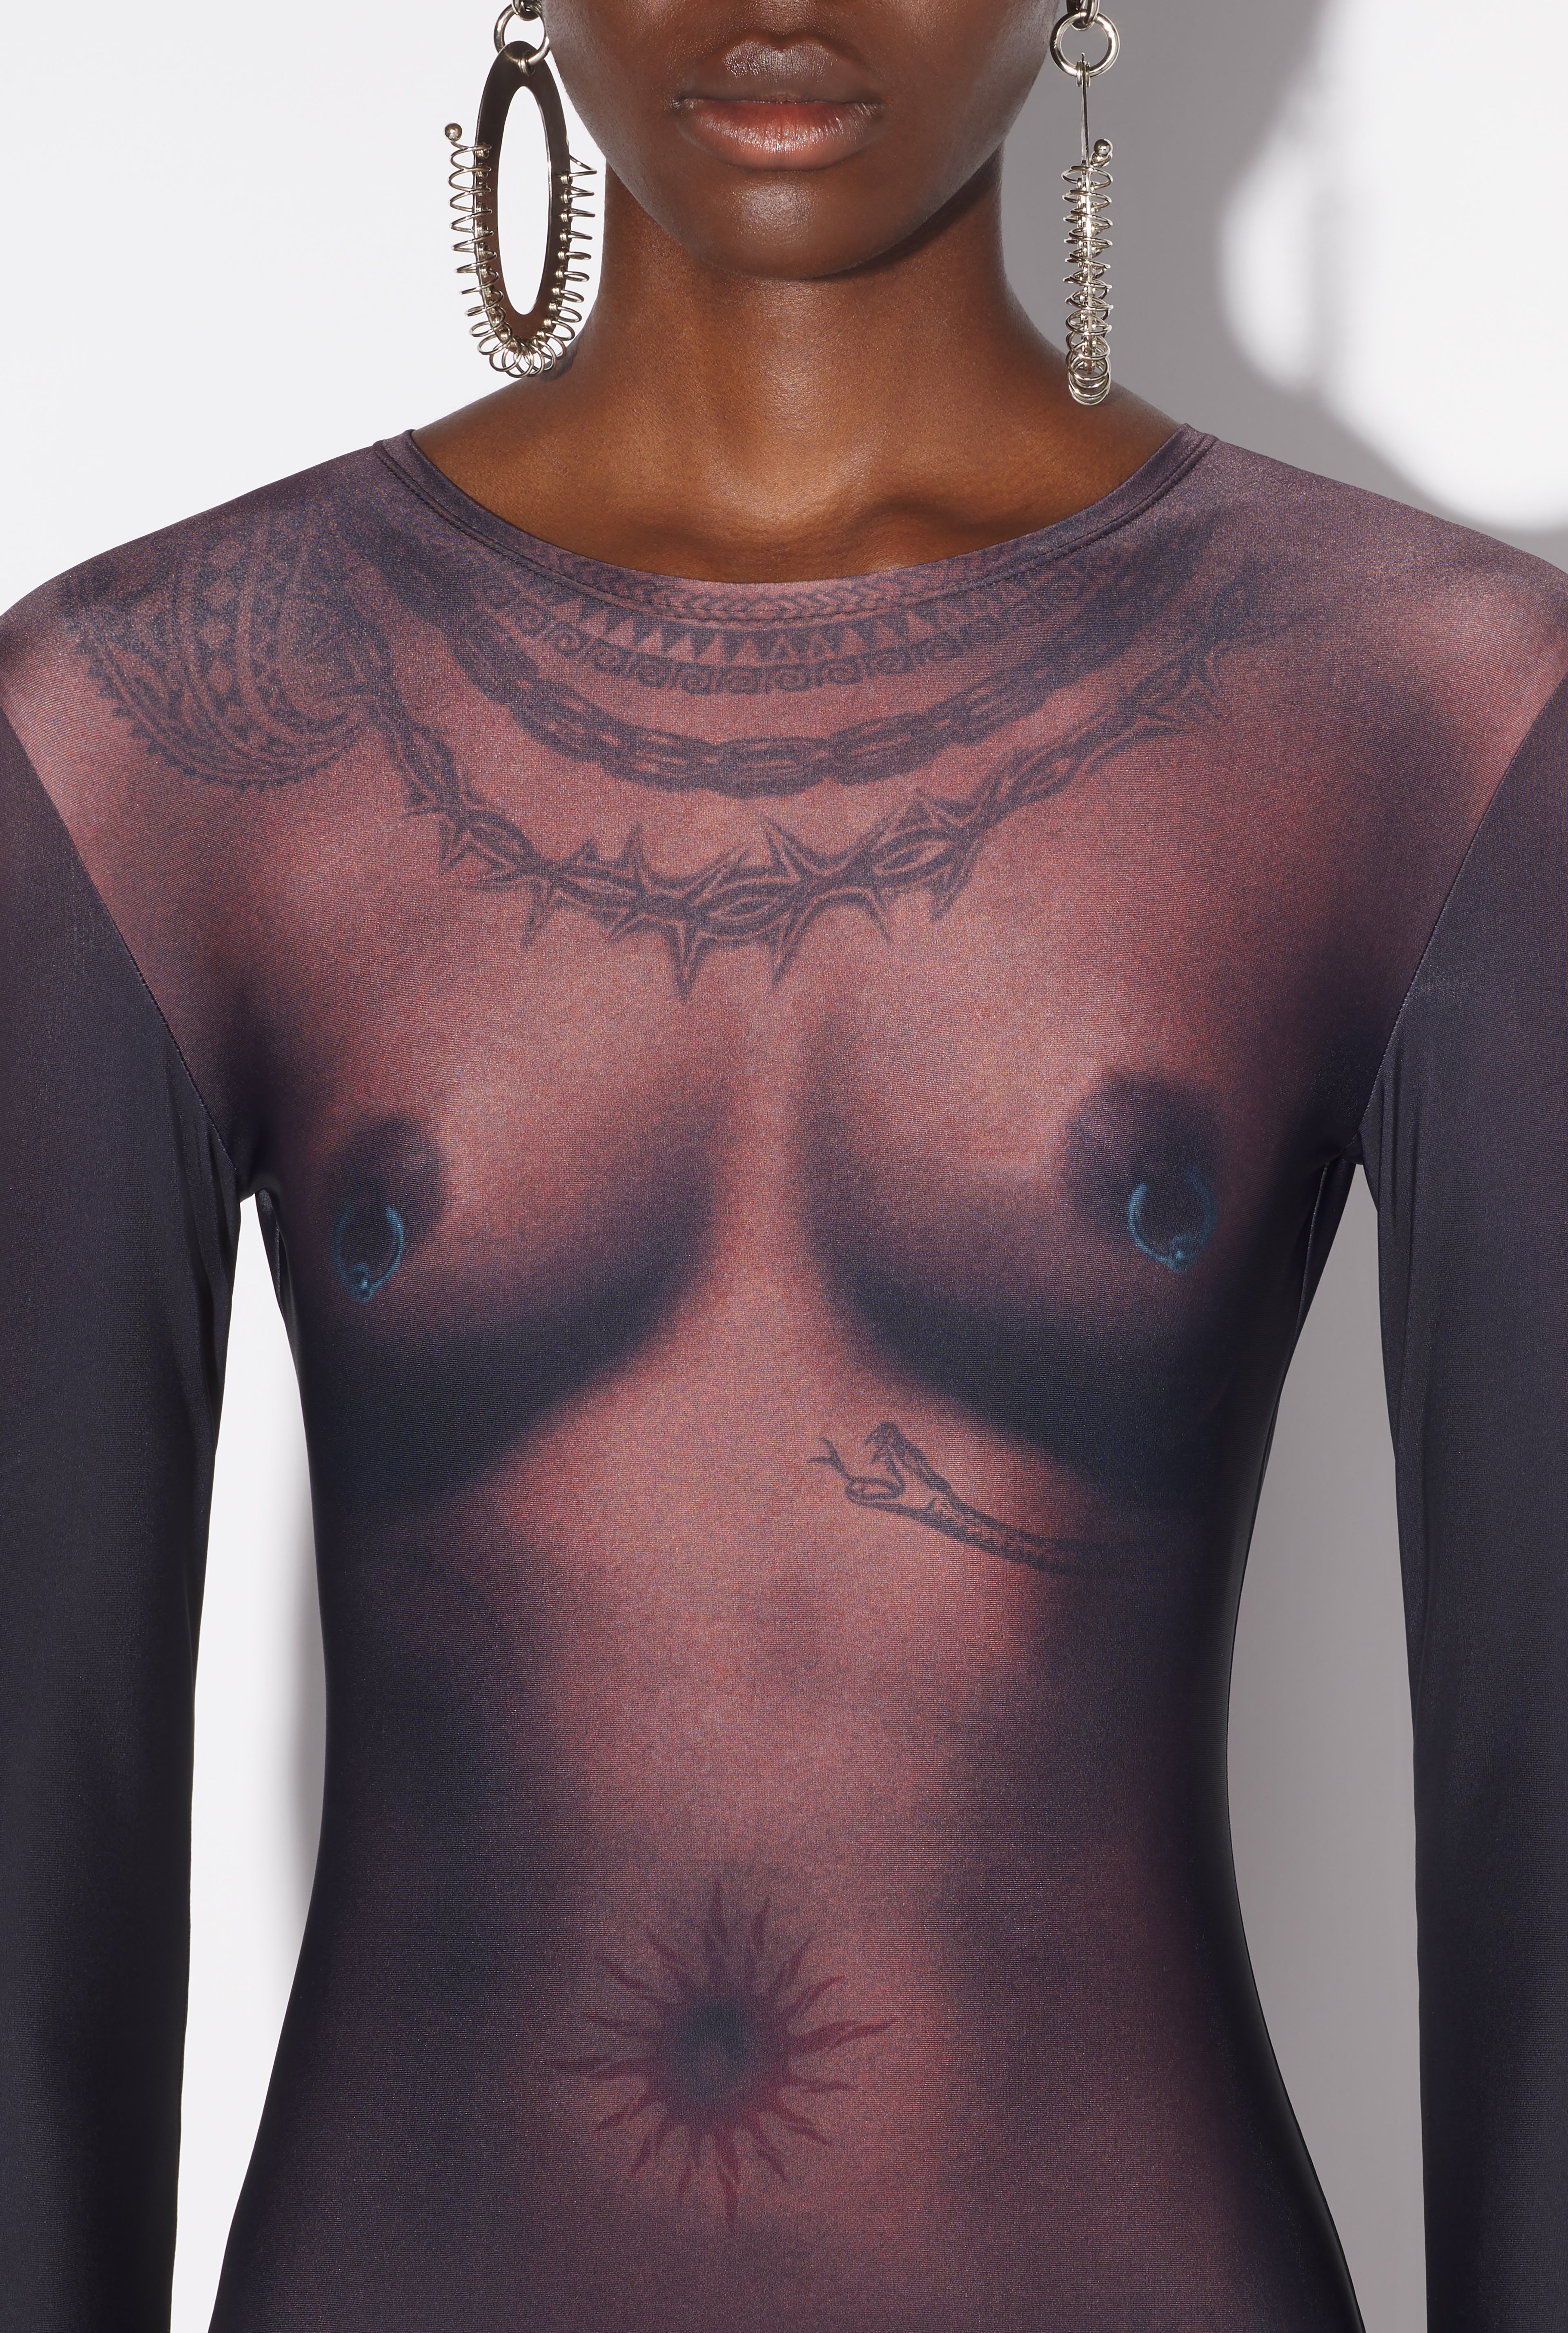 The Long Ebony Body Tattoo Dress